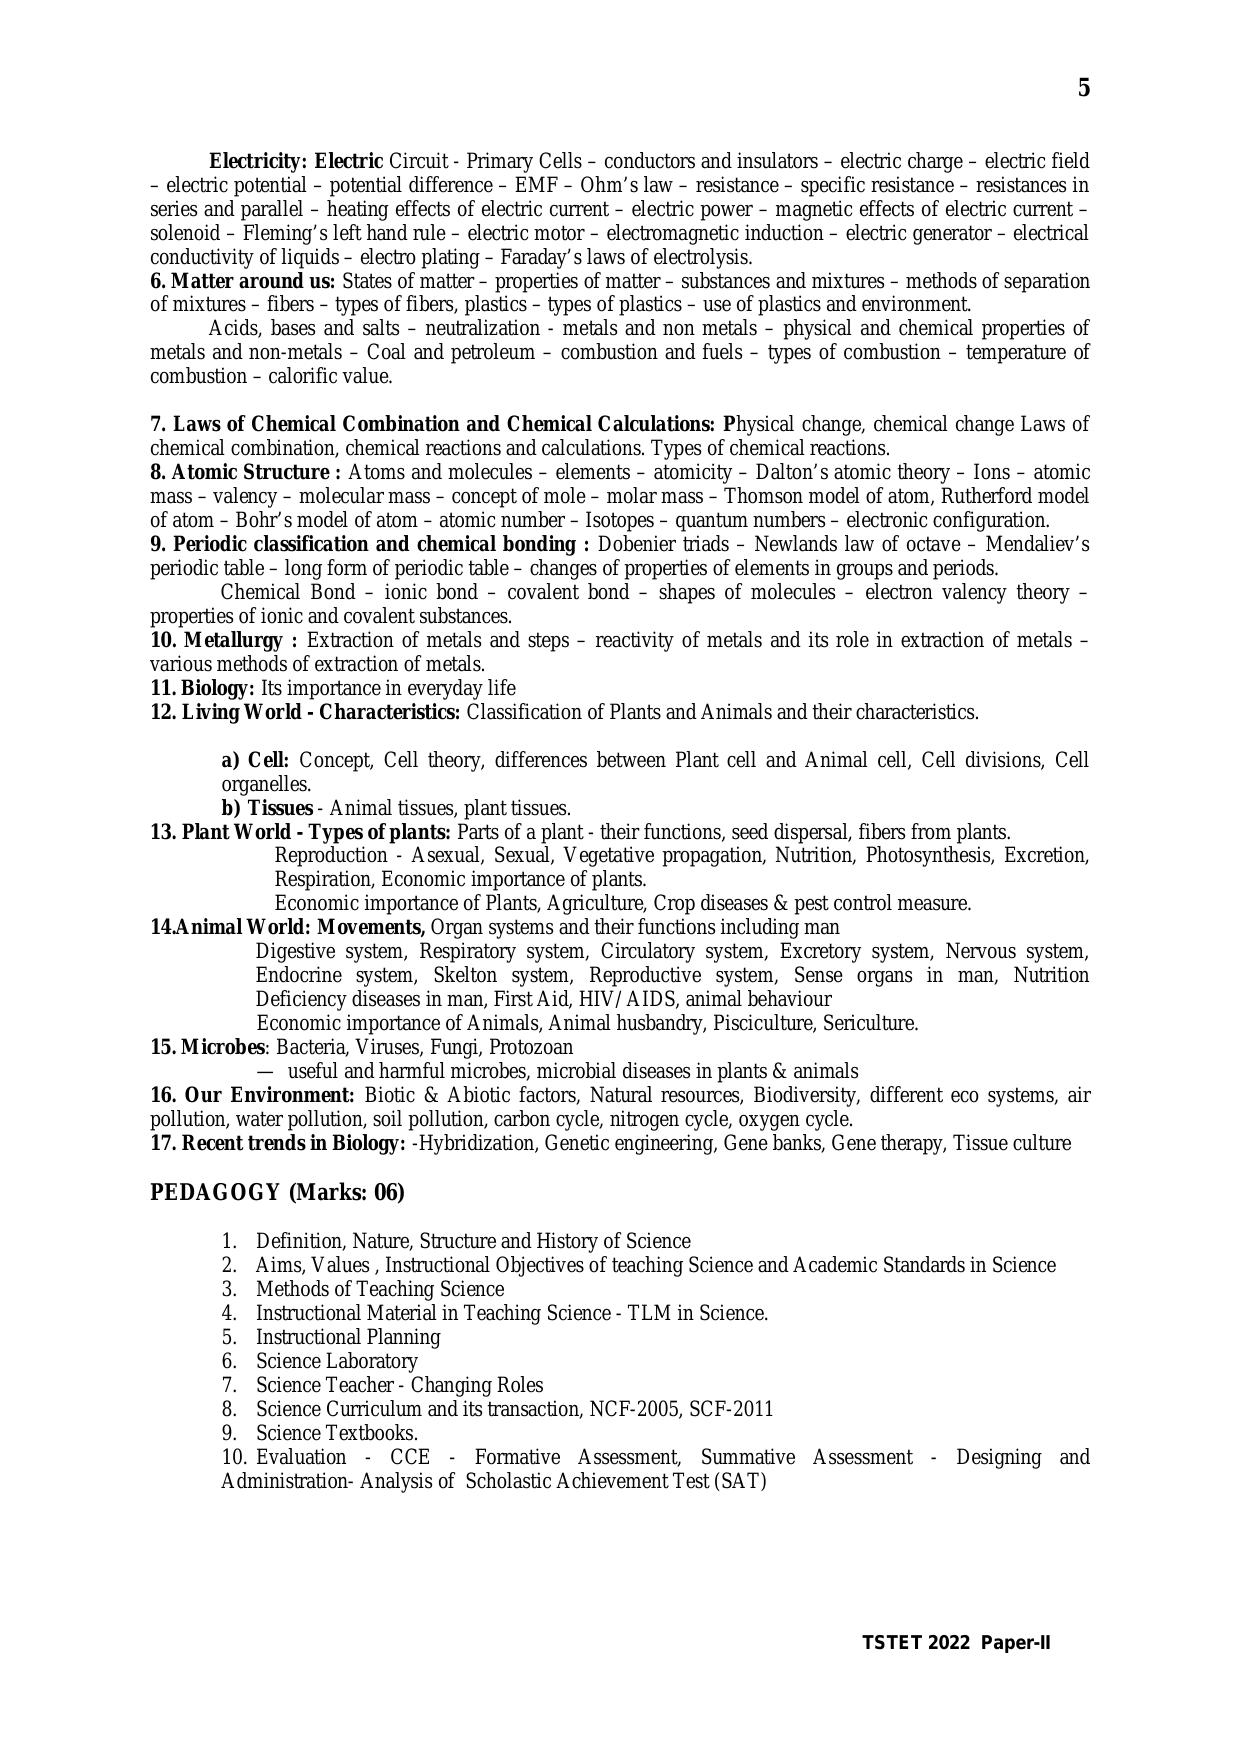 TS TET Syllabus for Paper 2 (Hindi) - Page 5